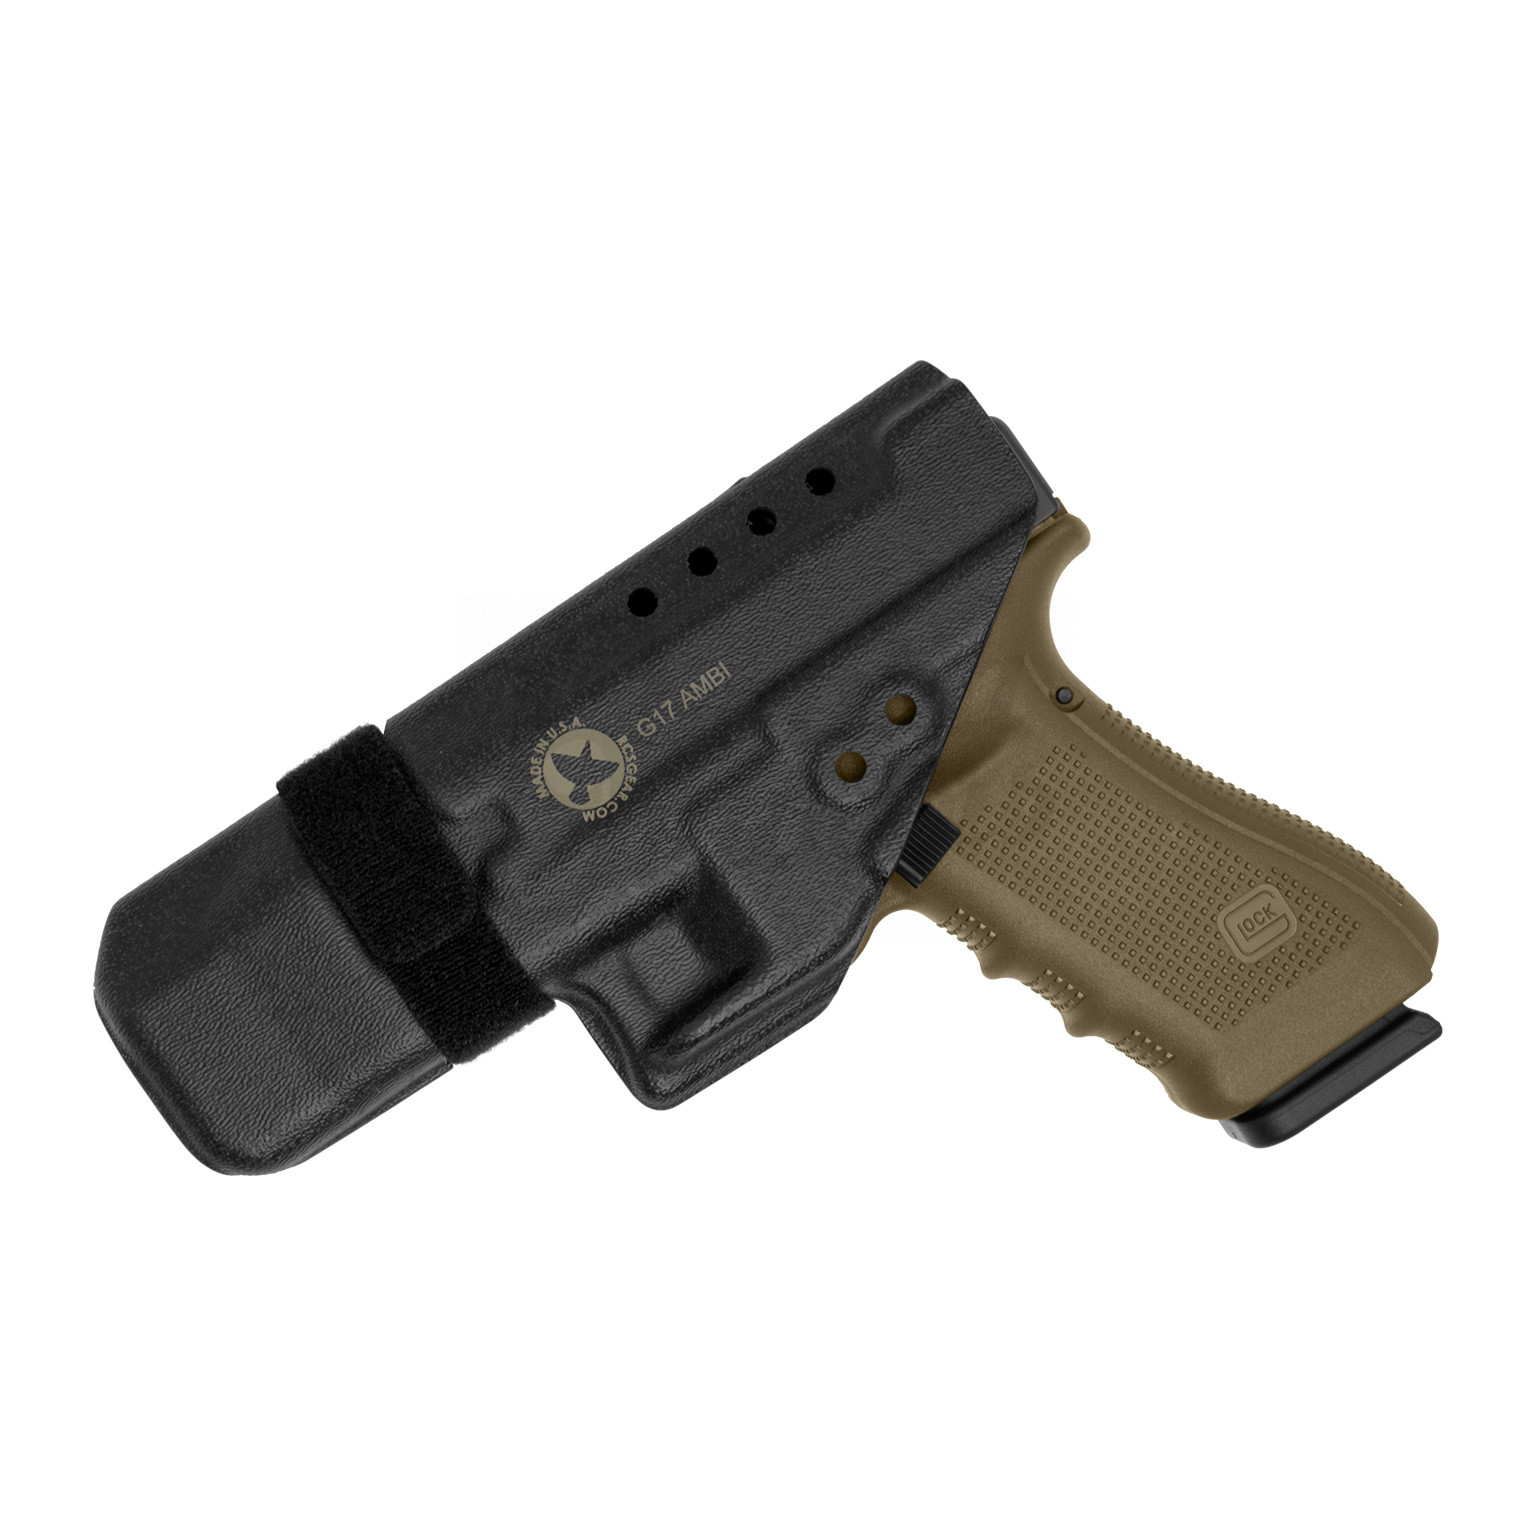 Blackhawk Stache IWB Holster For Glock 19 / 23 - Omaha Outdoors